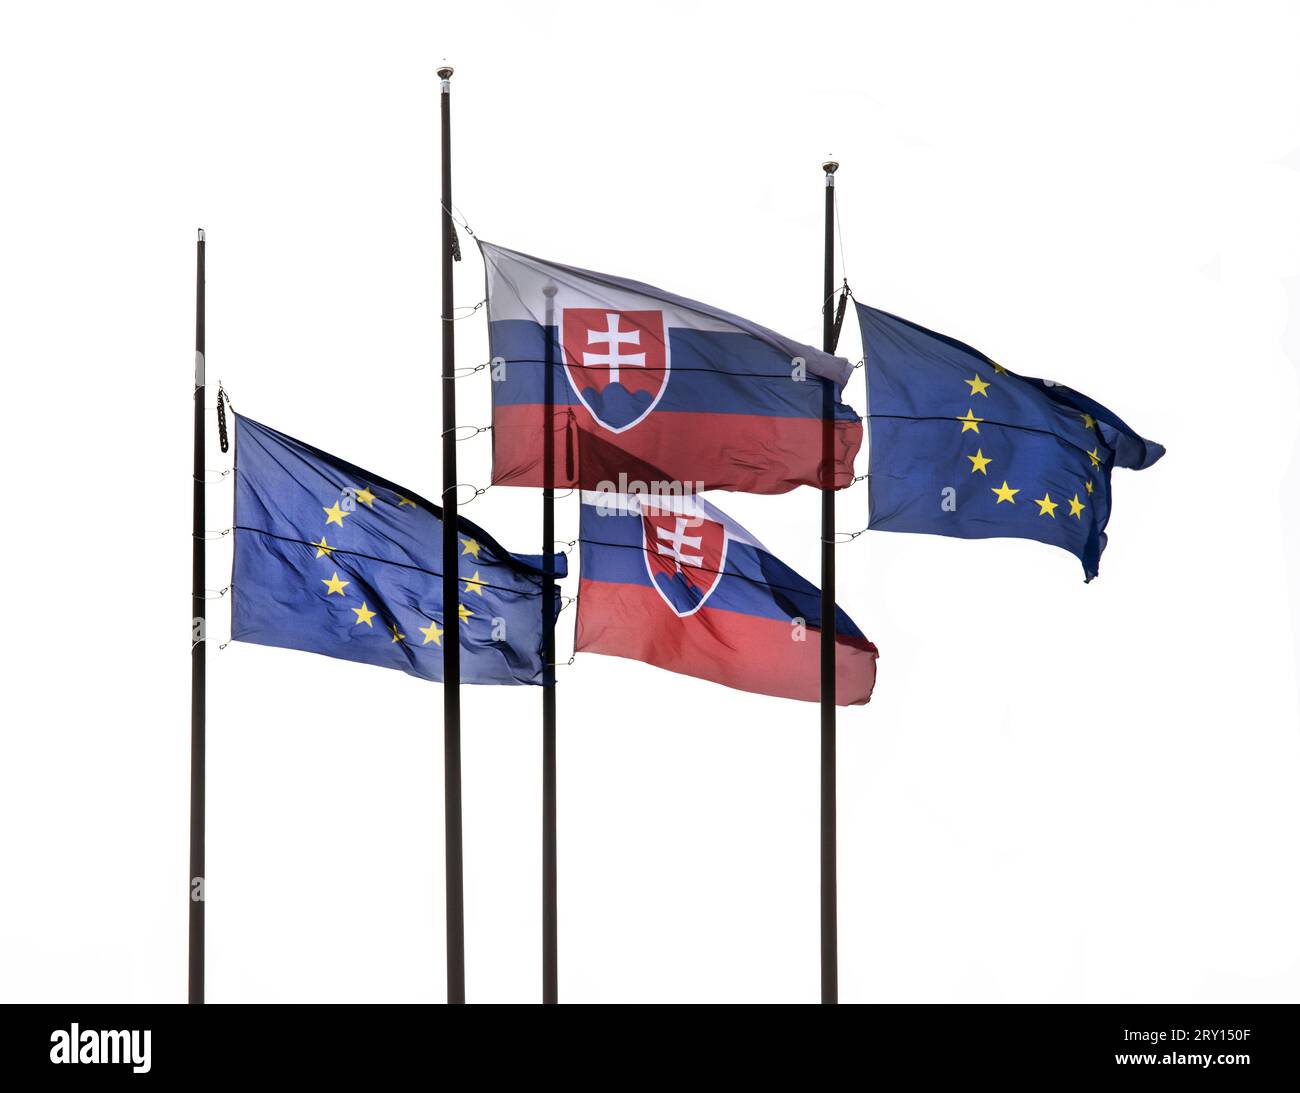 Le drapeau de la Slovaquie et de l'Union européenne volant sur le mât isolé sur un fond transparent Banque D'Images